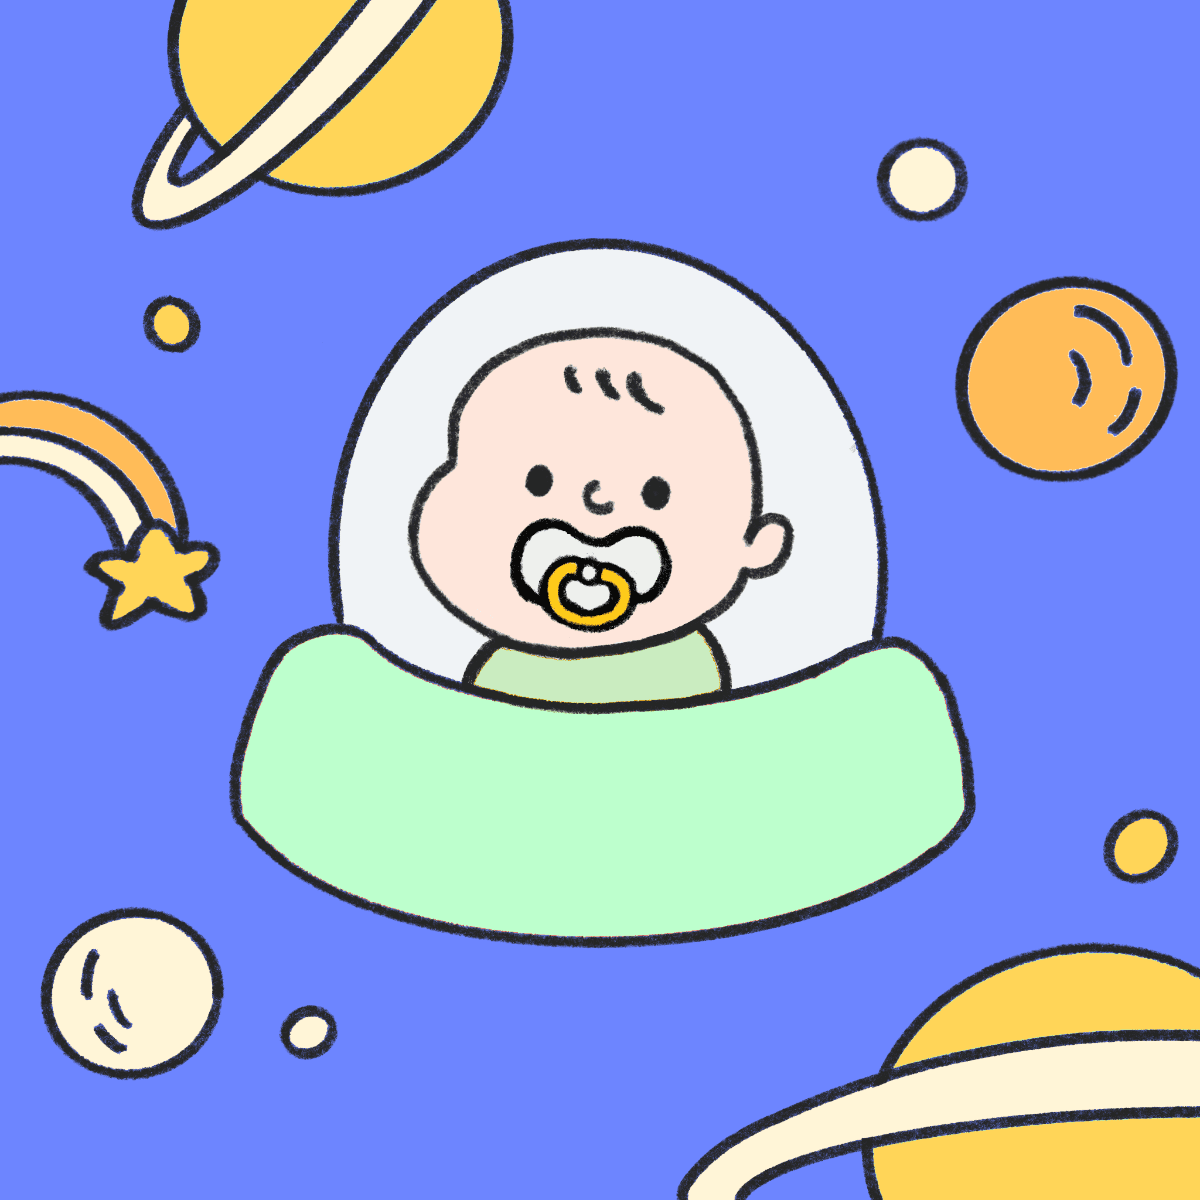 Space__bebe